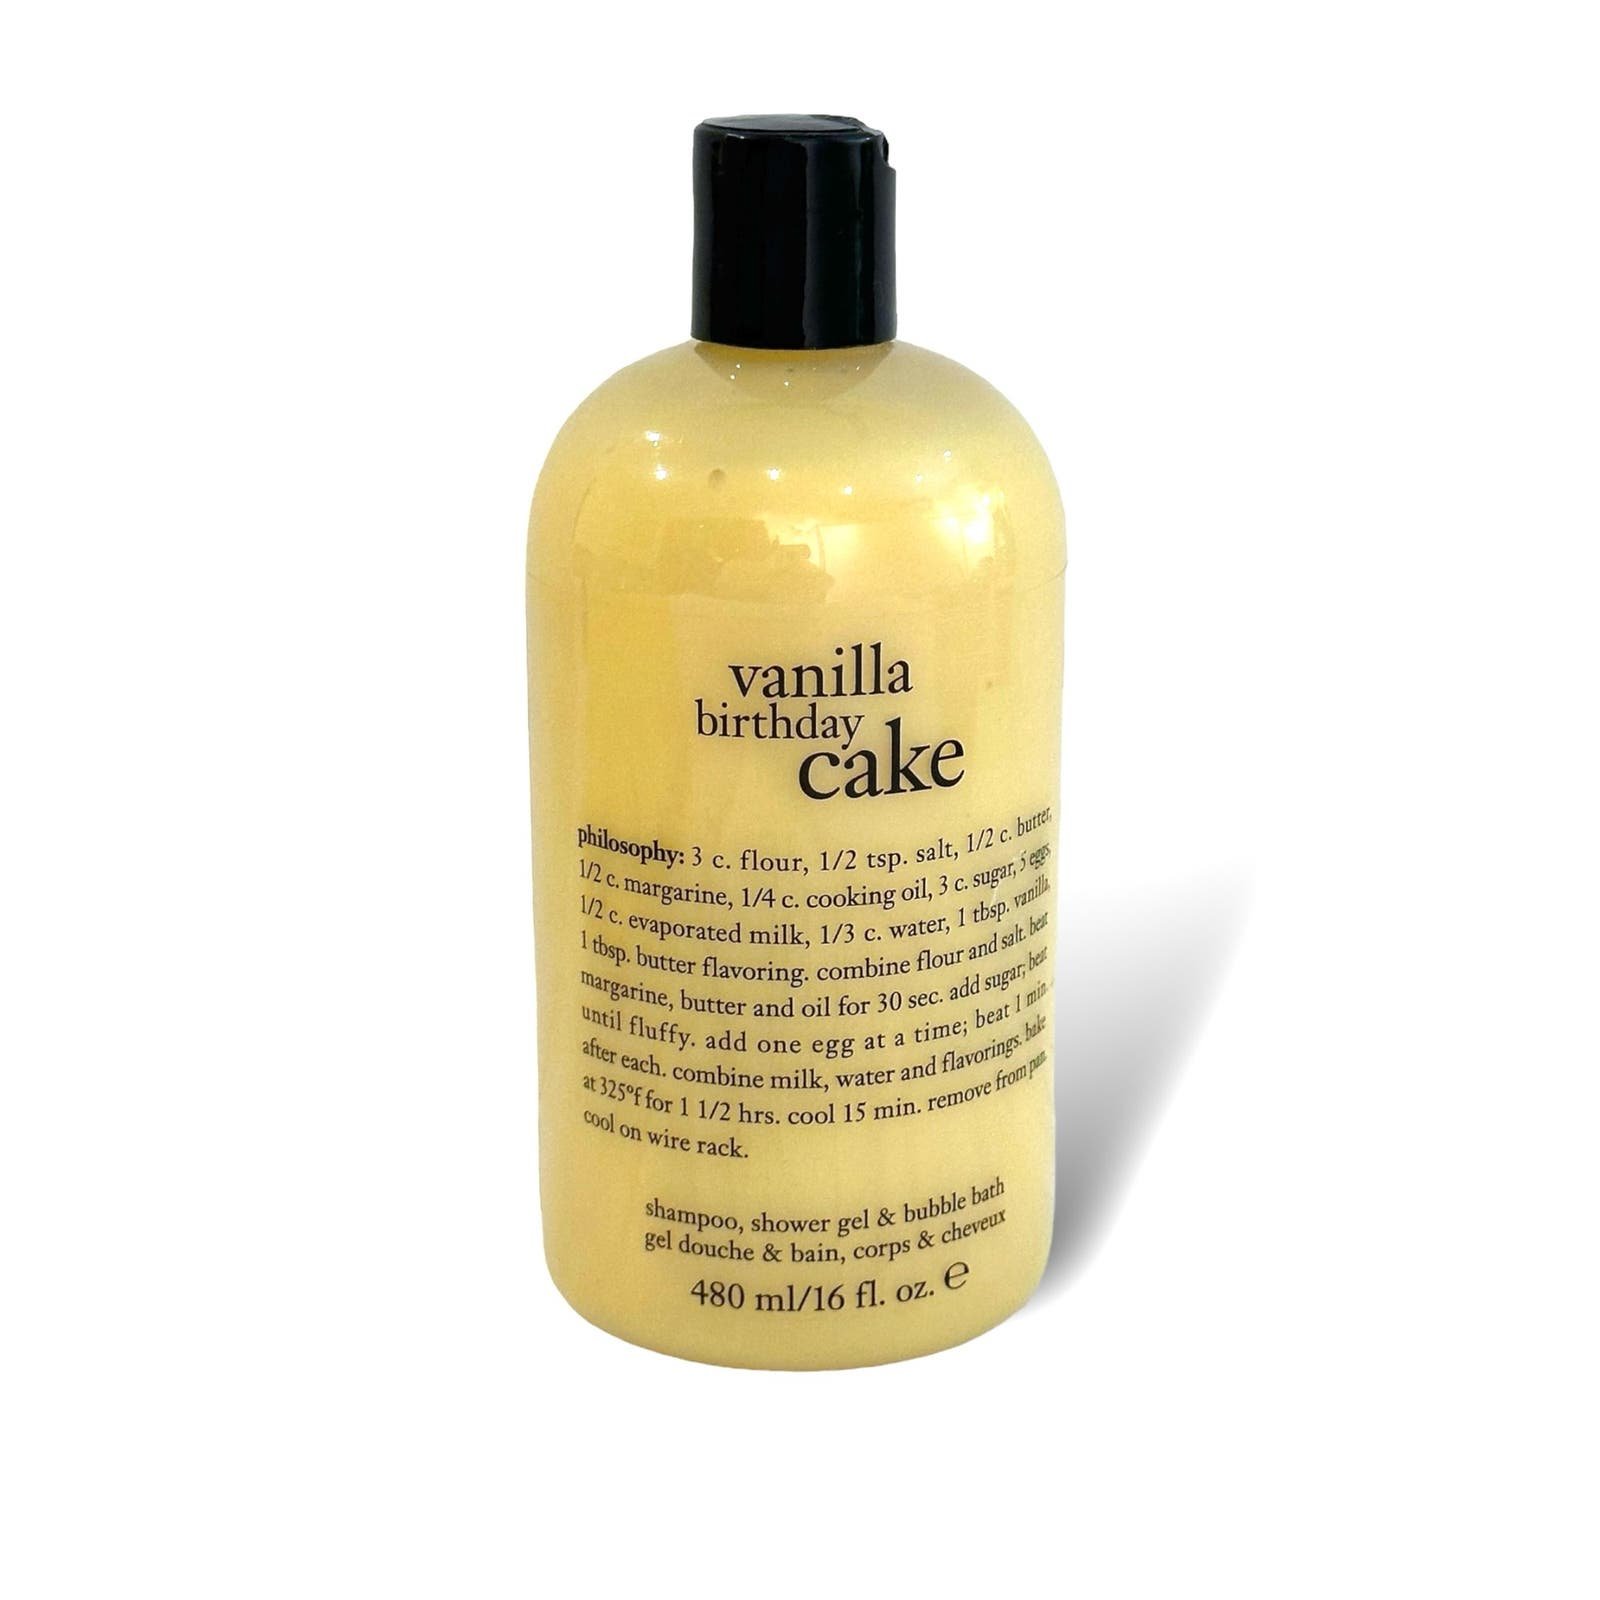 Philosophy Vanilla Birthday Cake Shampoo Shower Gel Bub